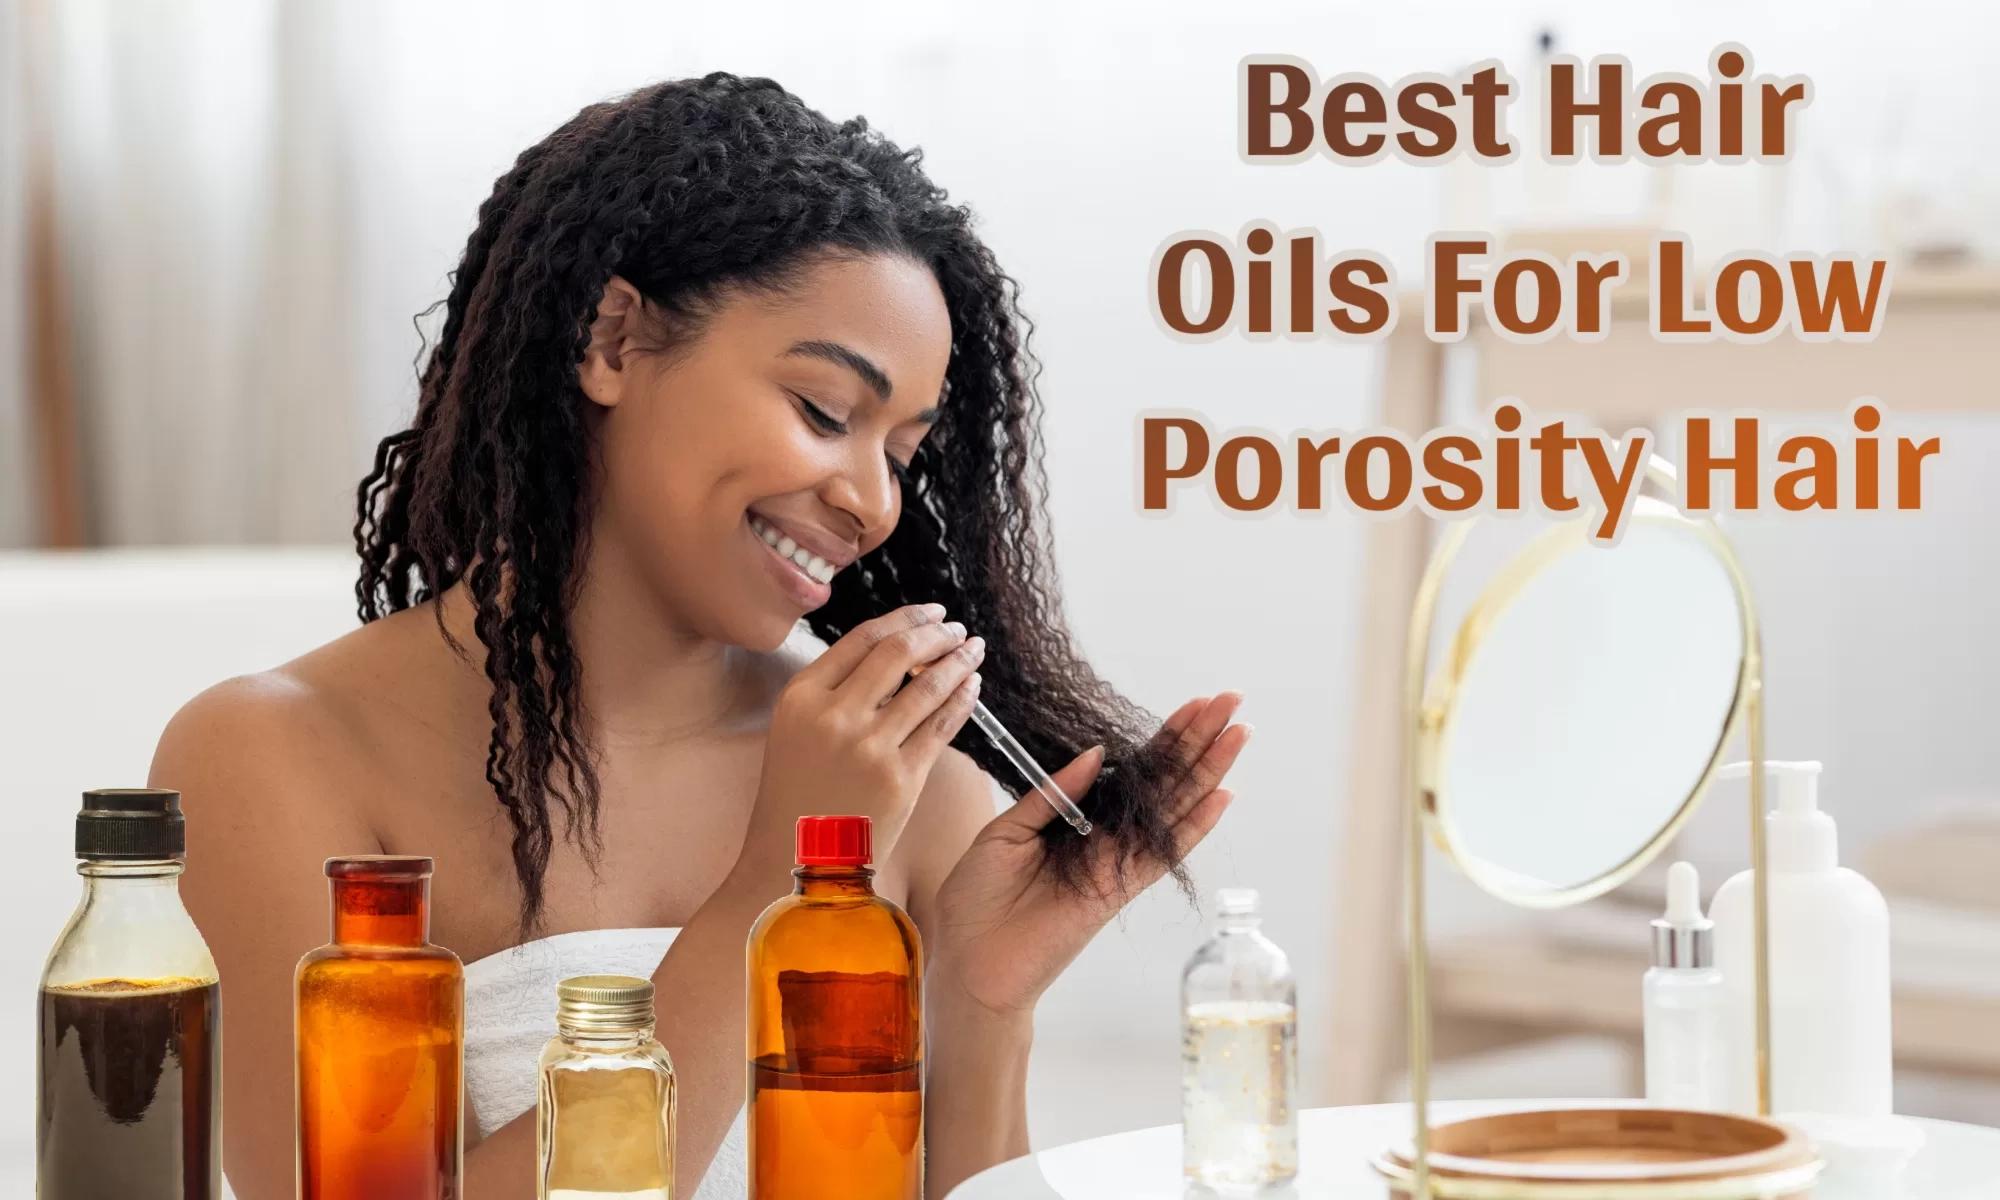 Best Hair Oils For Low Porosity Hair